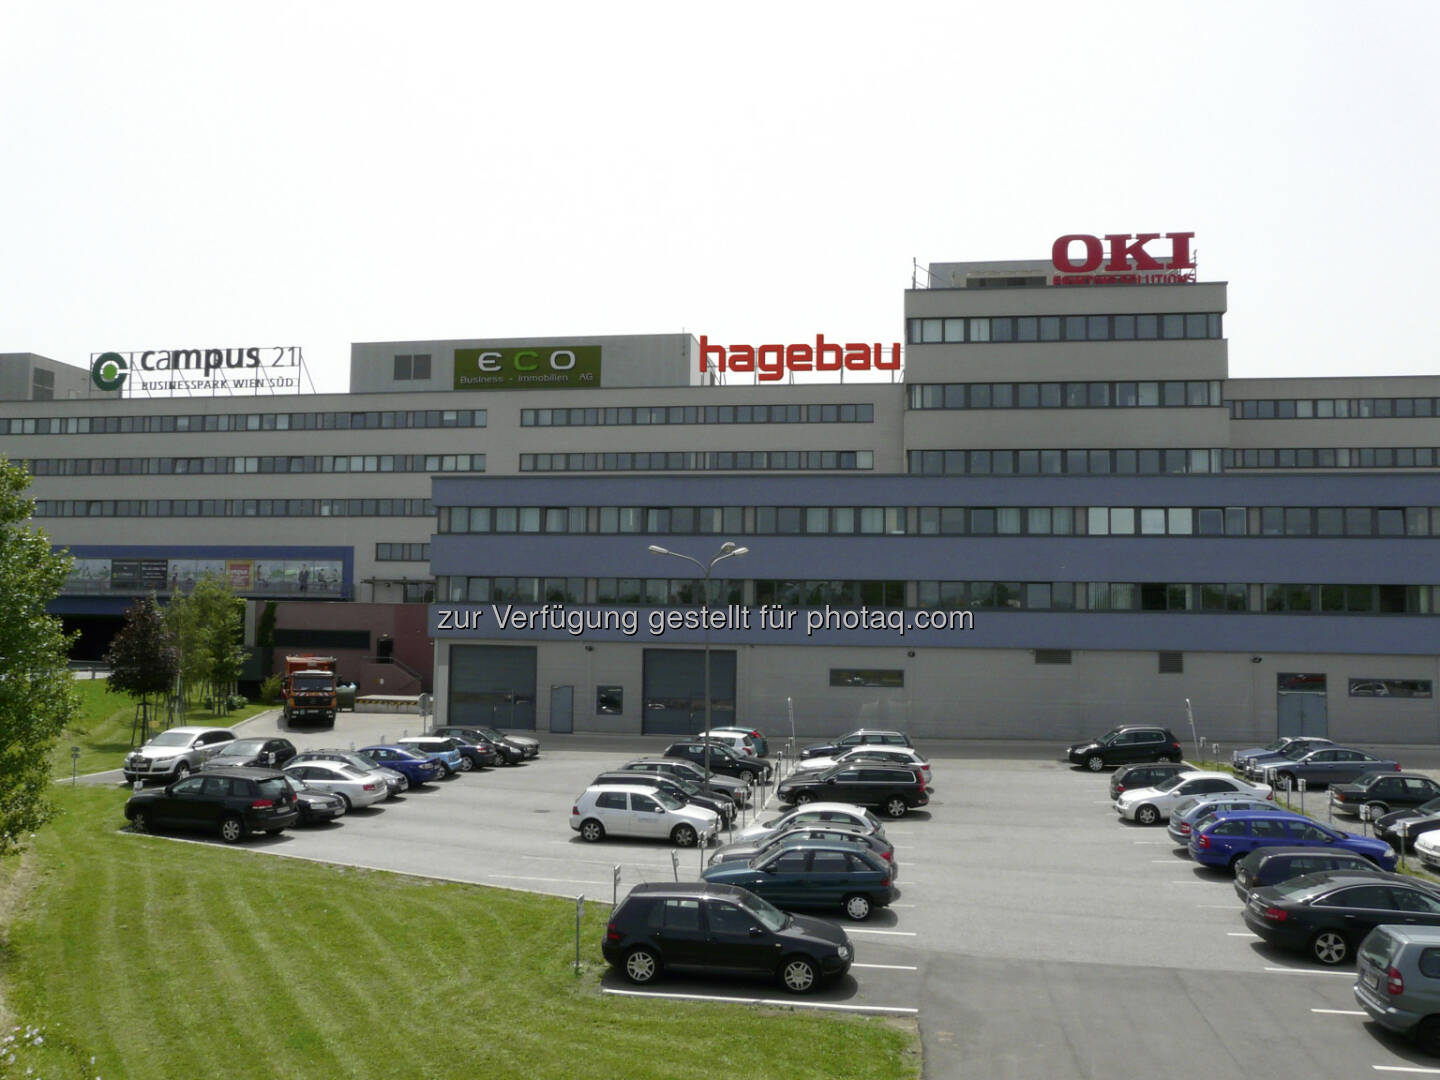 hagebau Handelsgesellschaft für Baustoffe GmbH & Co KG: hagebau mit Umsatzrekord: 6,1 Mrd. Euro im Jubiläumsjahr 2014